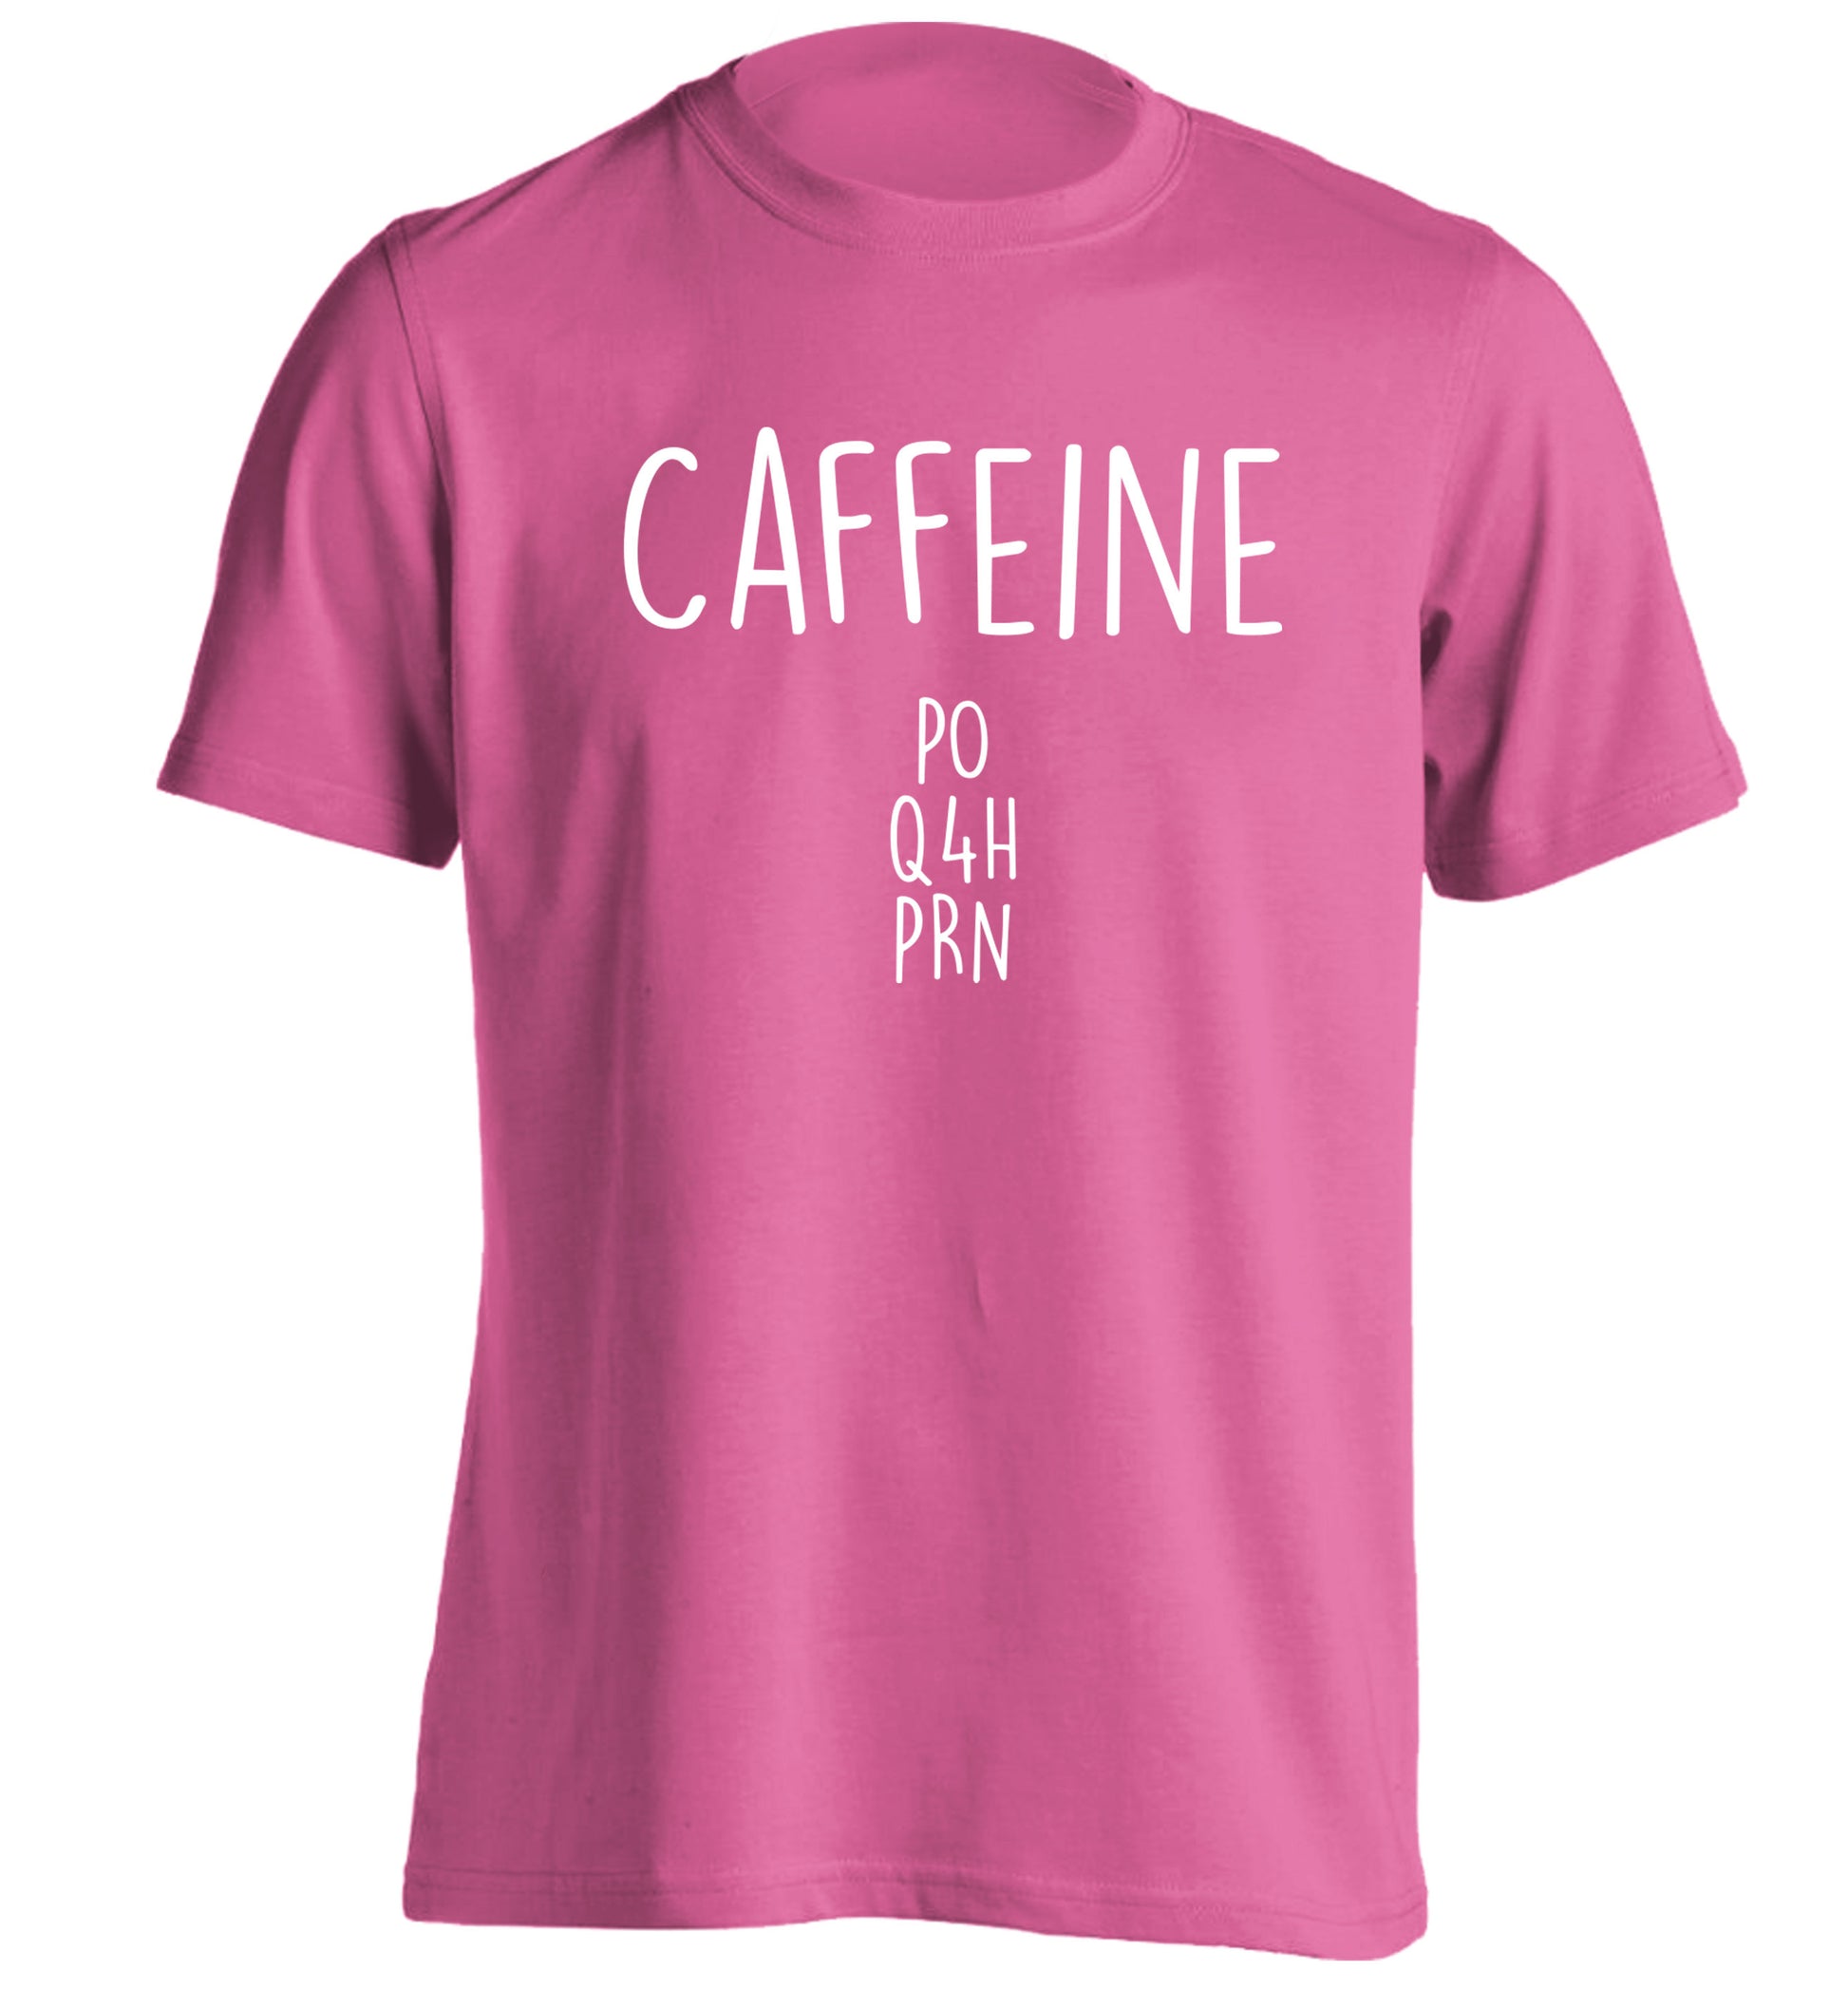 Caffeine PO Q4H PRN adults unisex pink Tshirt 2XL